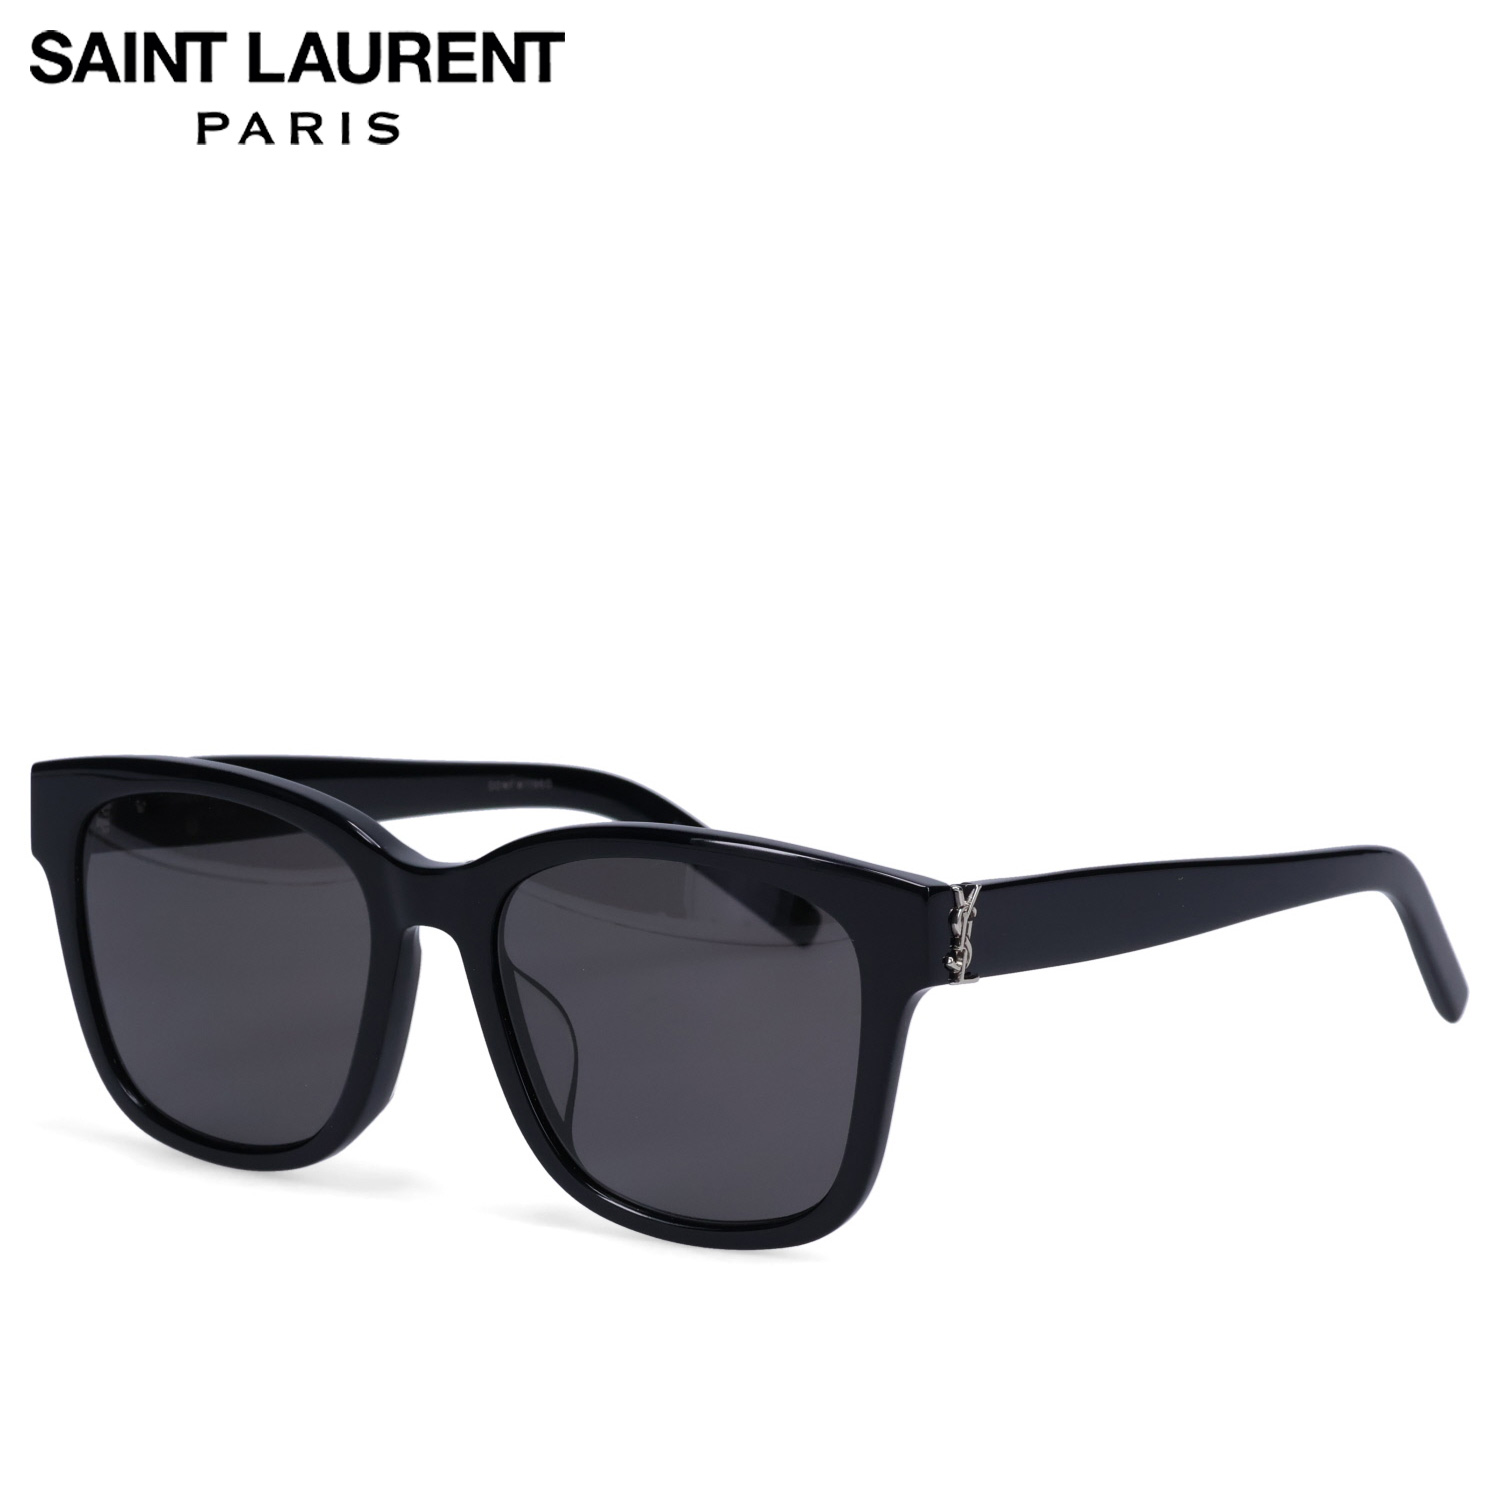 サンローラン パリ SAINT LAURENT PARIS サングラス メンズ レディース アジアンフィット UVカット 紫外線対策  SUNGLASSES ブラック 黒 SLM68F-003